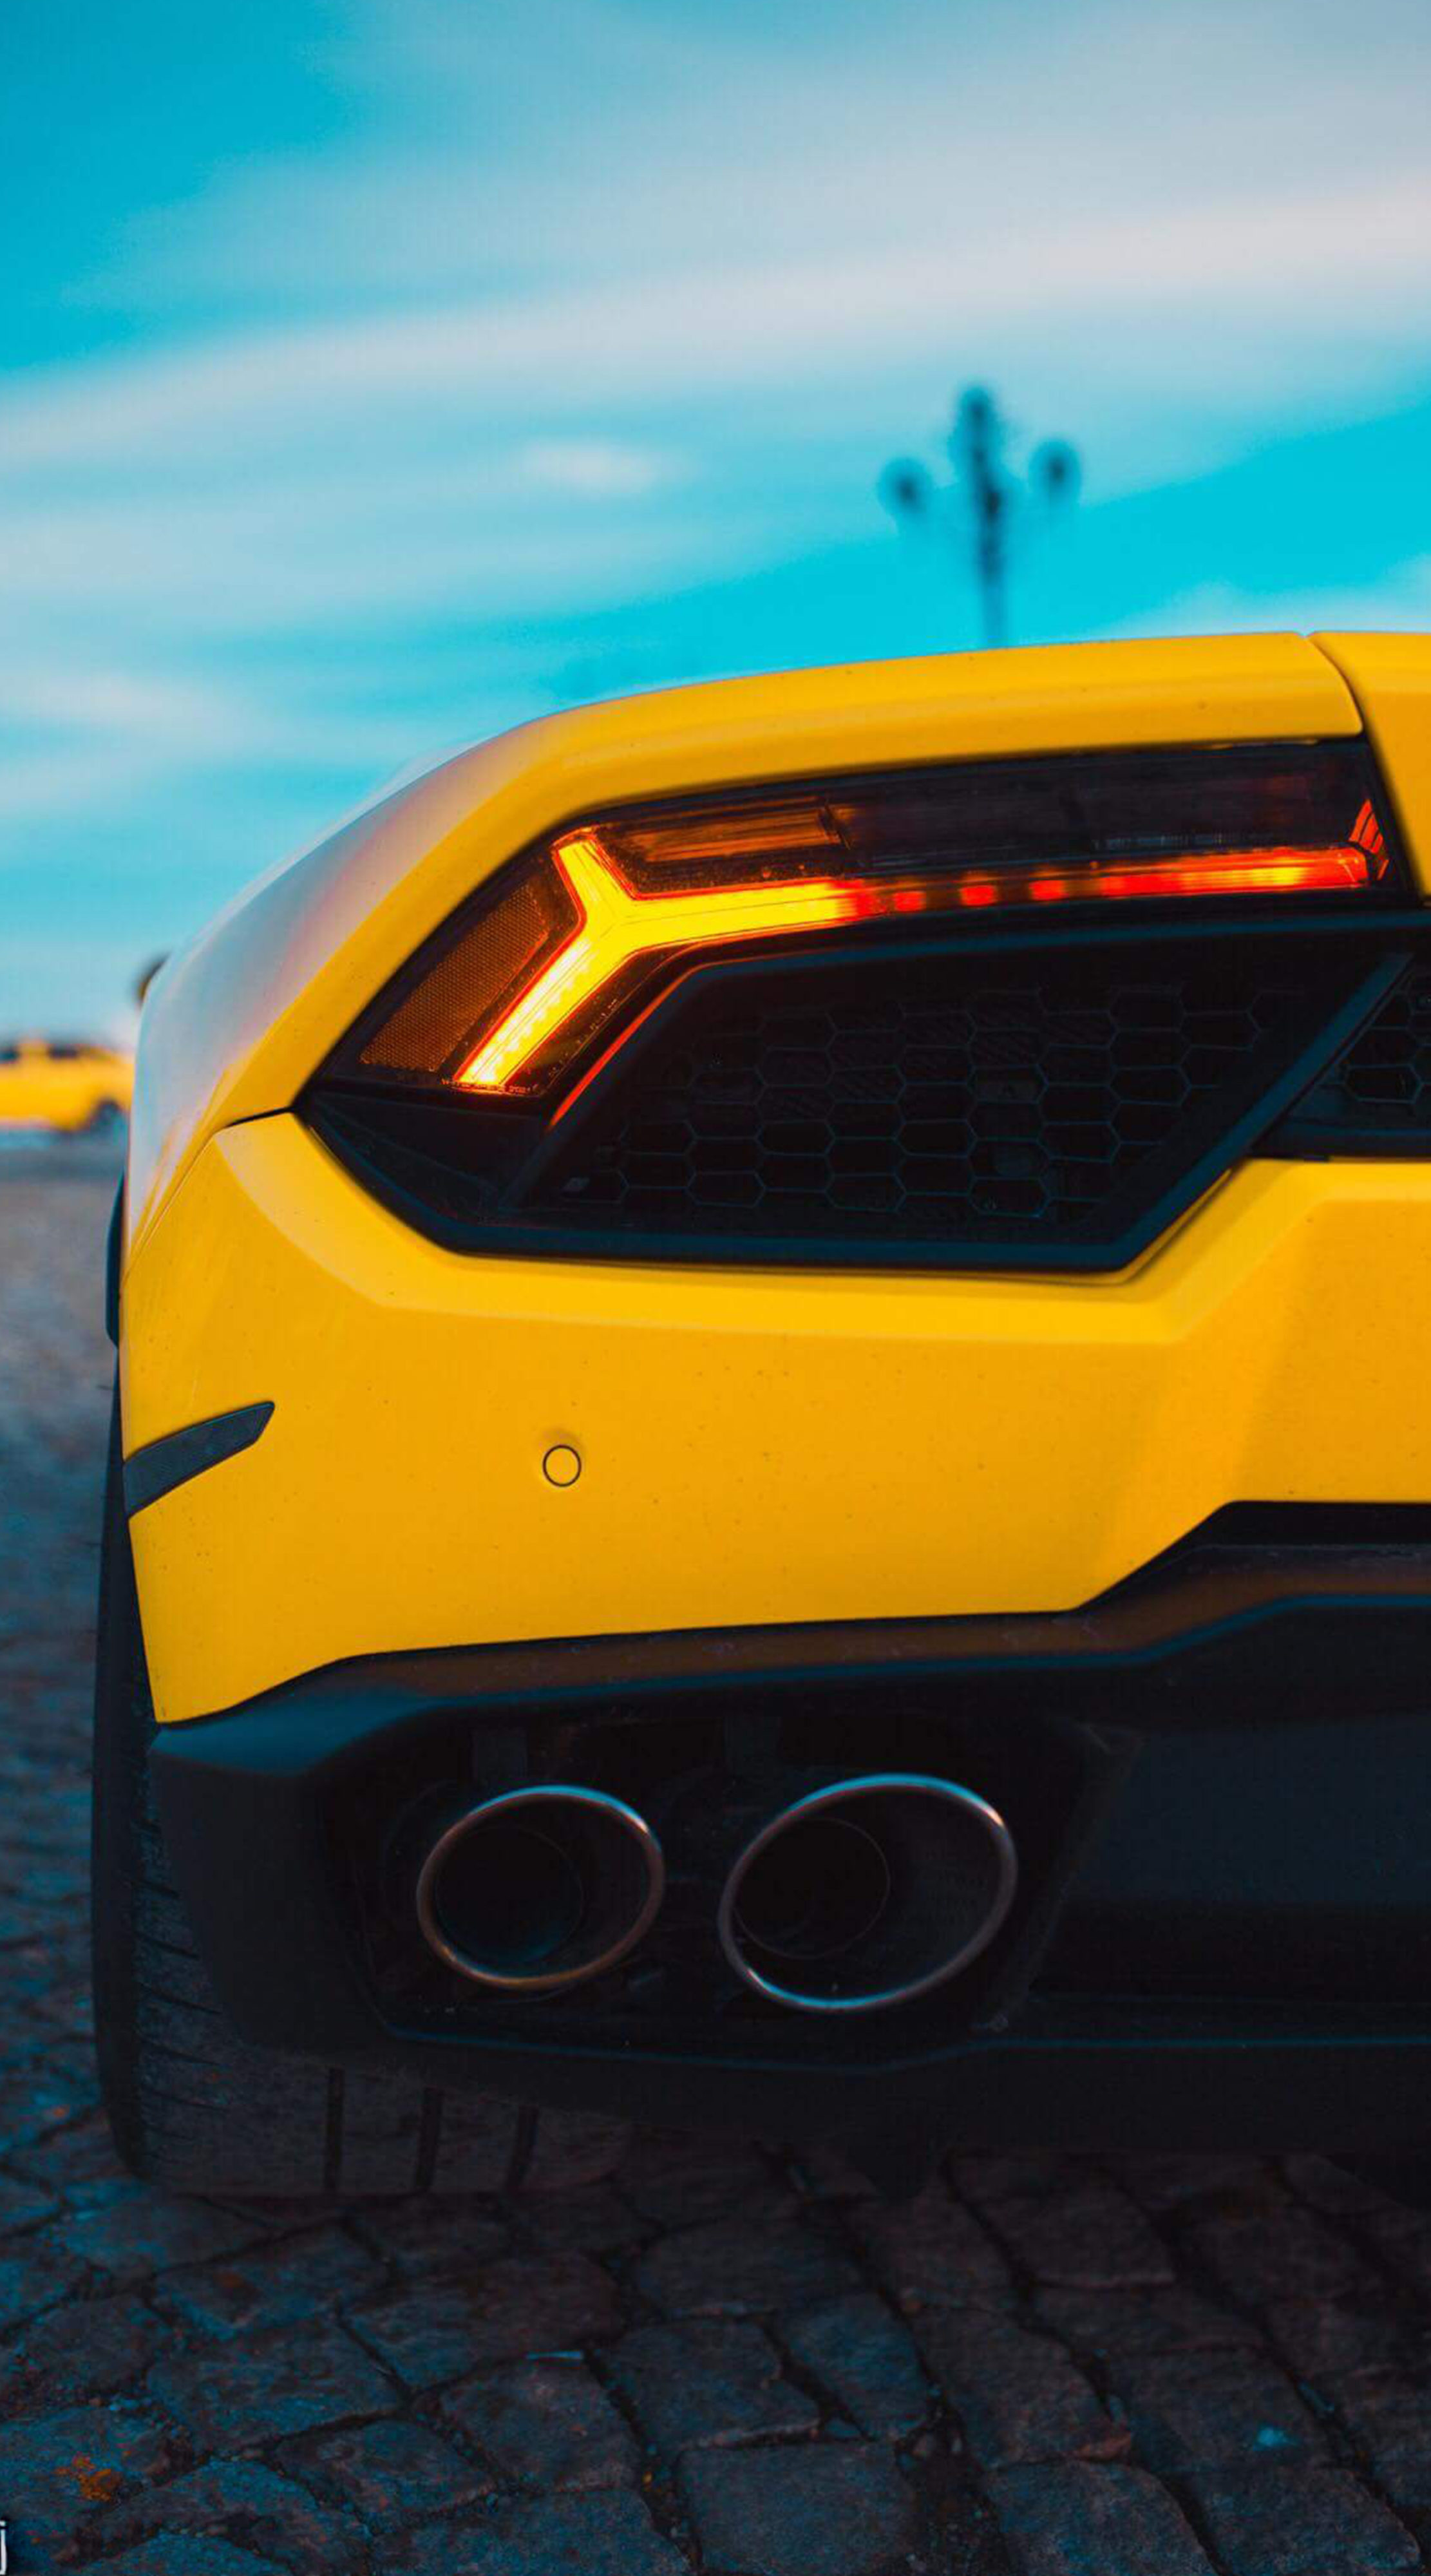 Lamborghini Huracan Wallpaper For Mobile - HD Wallpaper 